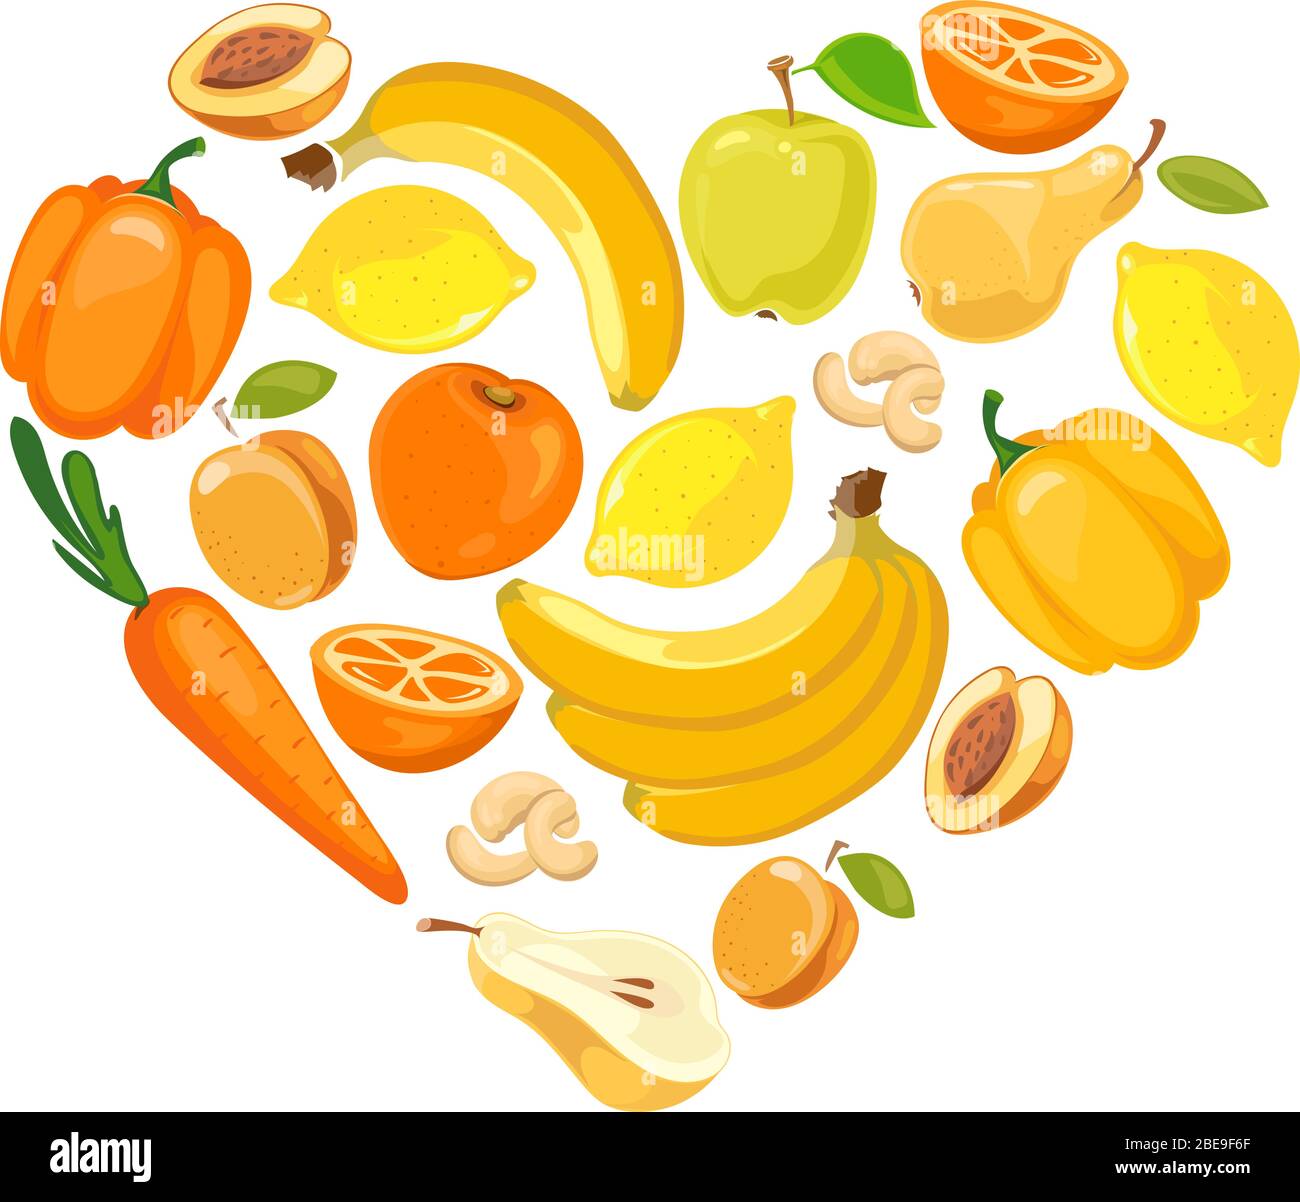 Gelb und orange Obst und Gemüse. Gesunde und organische Früchte, Vektorgrafik Stock Vektor